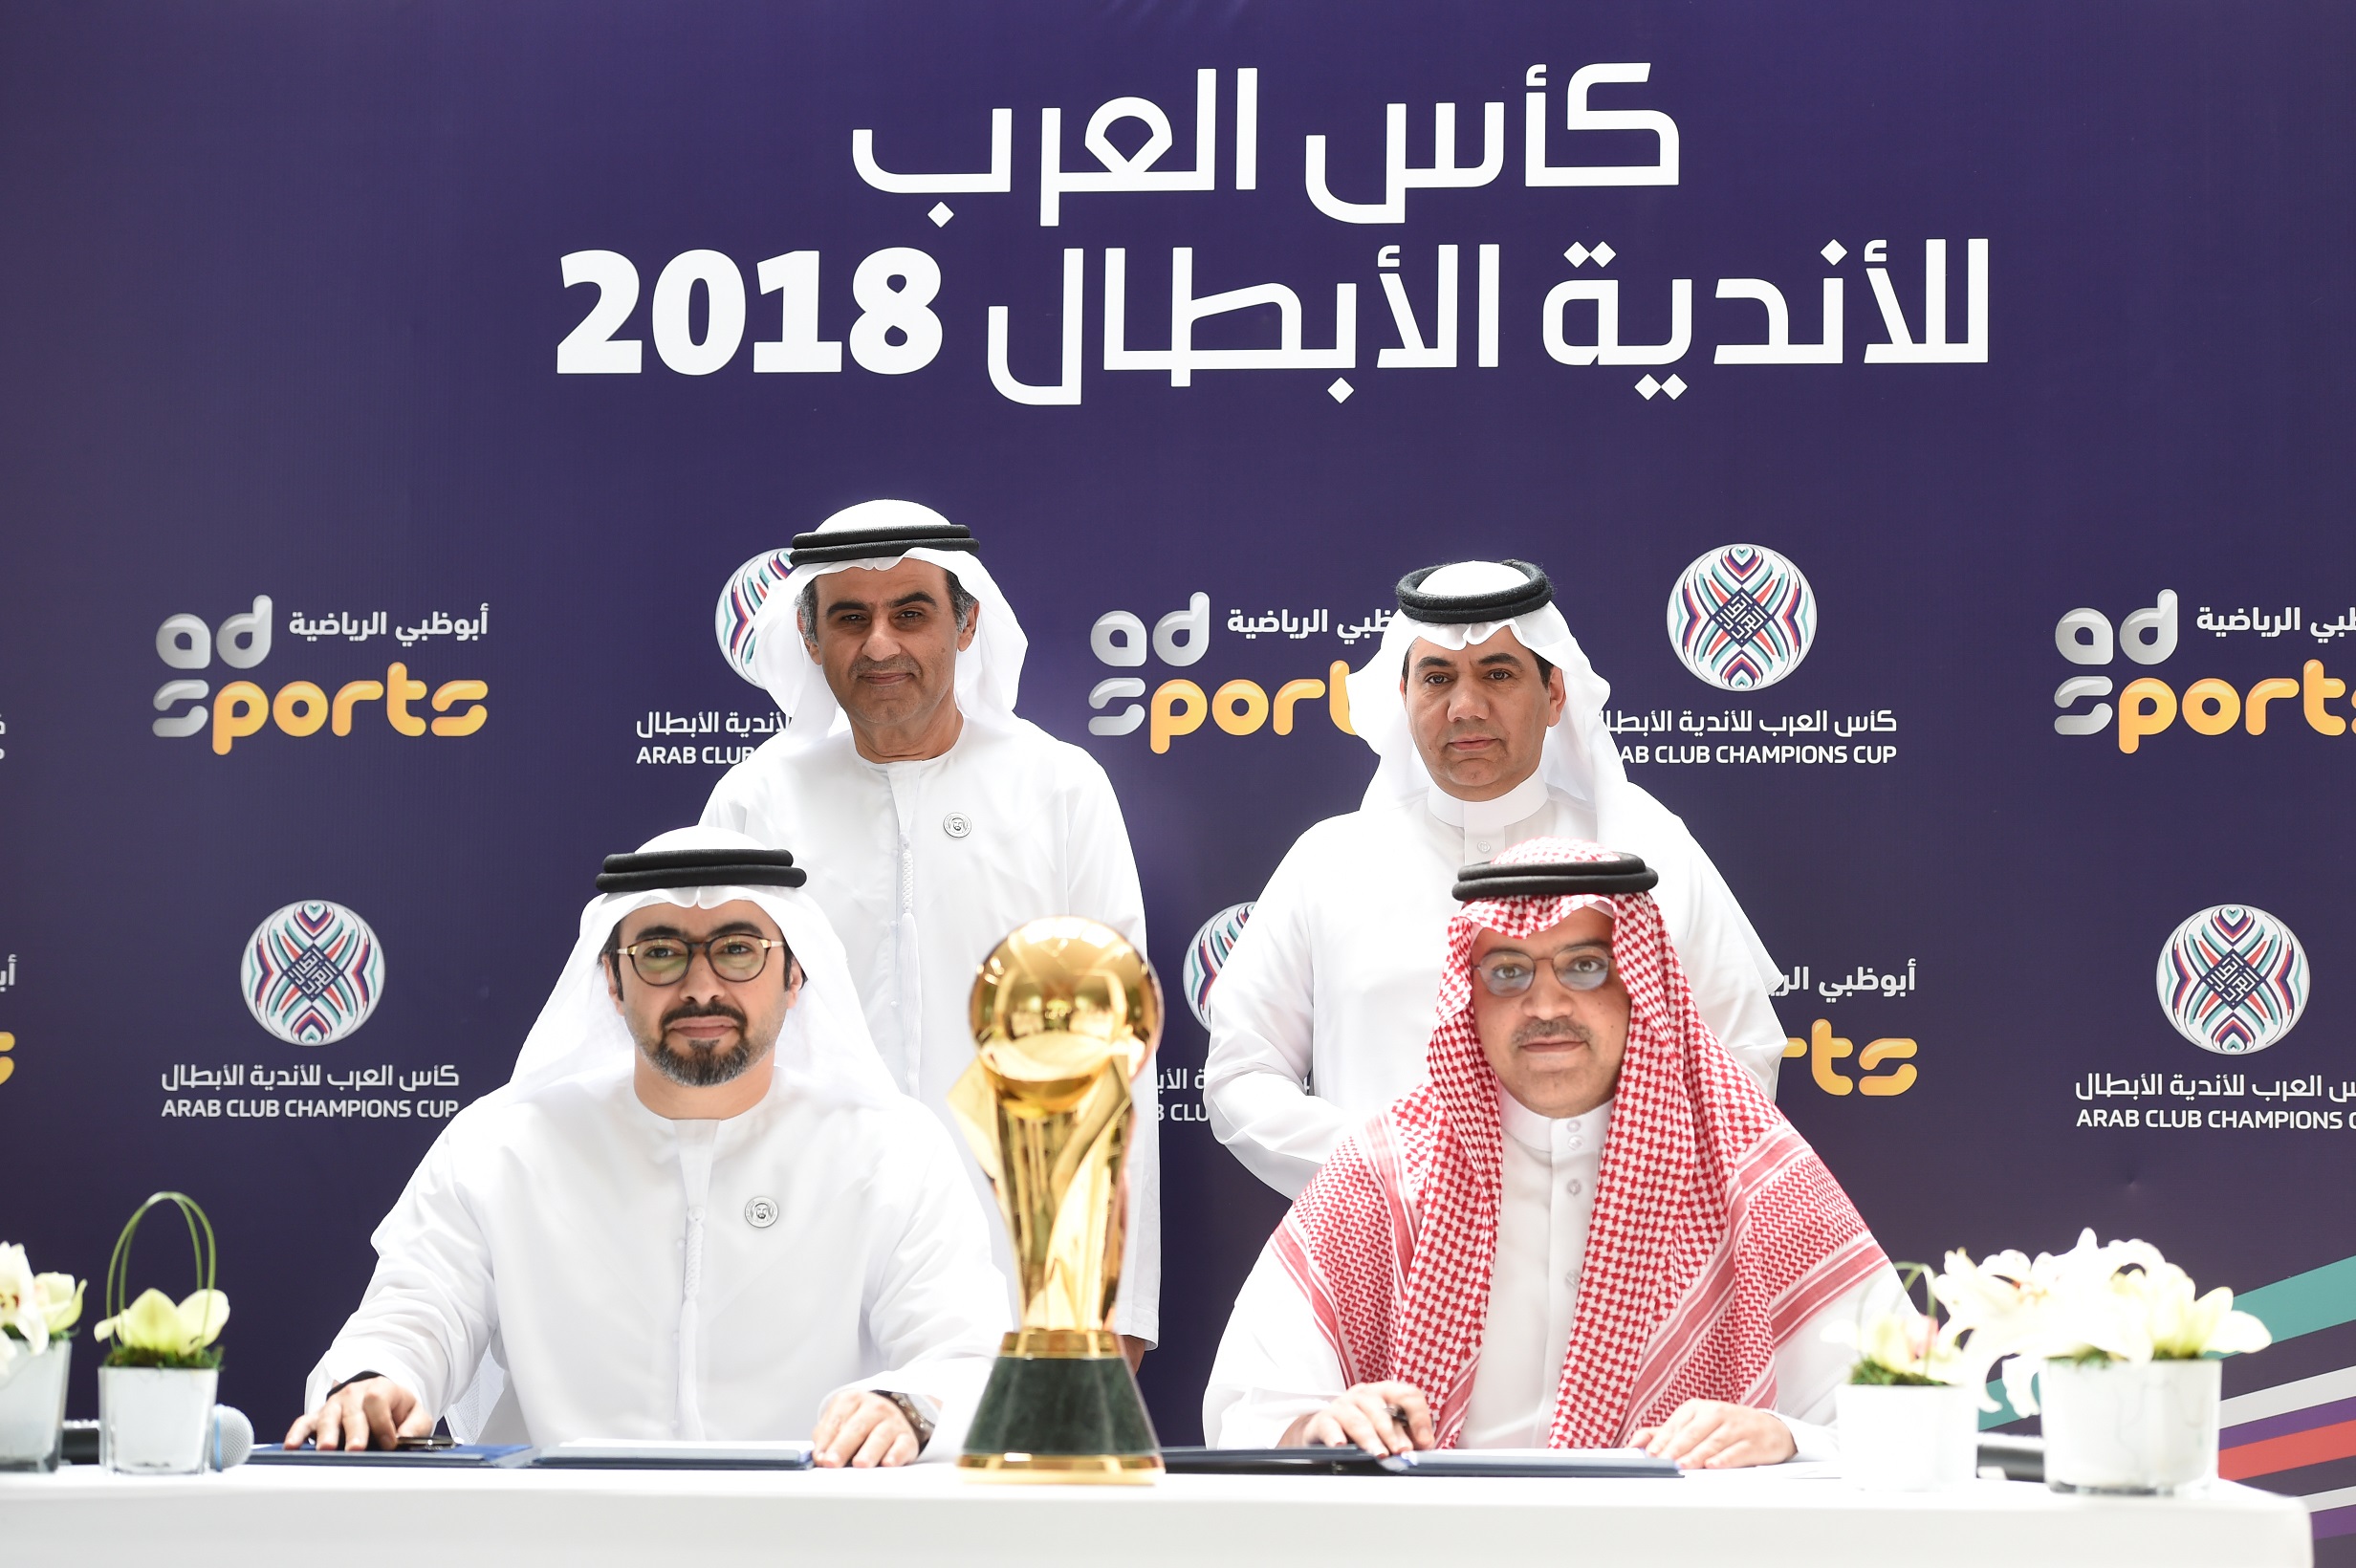 أبوظبي الرياضية تنقل حصريا كأس العرب للأندية الأبطال